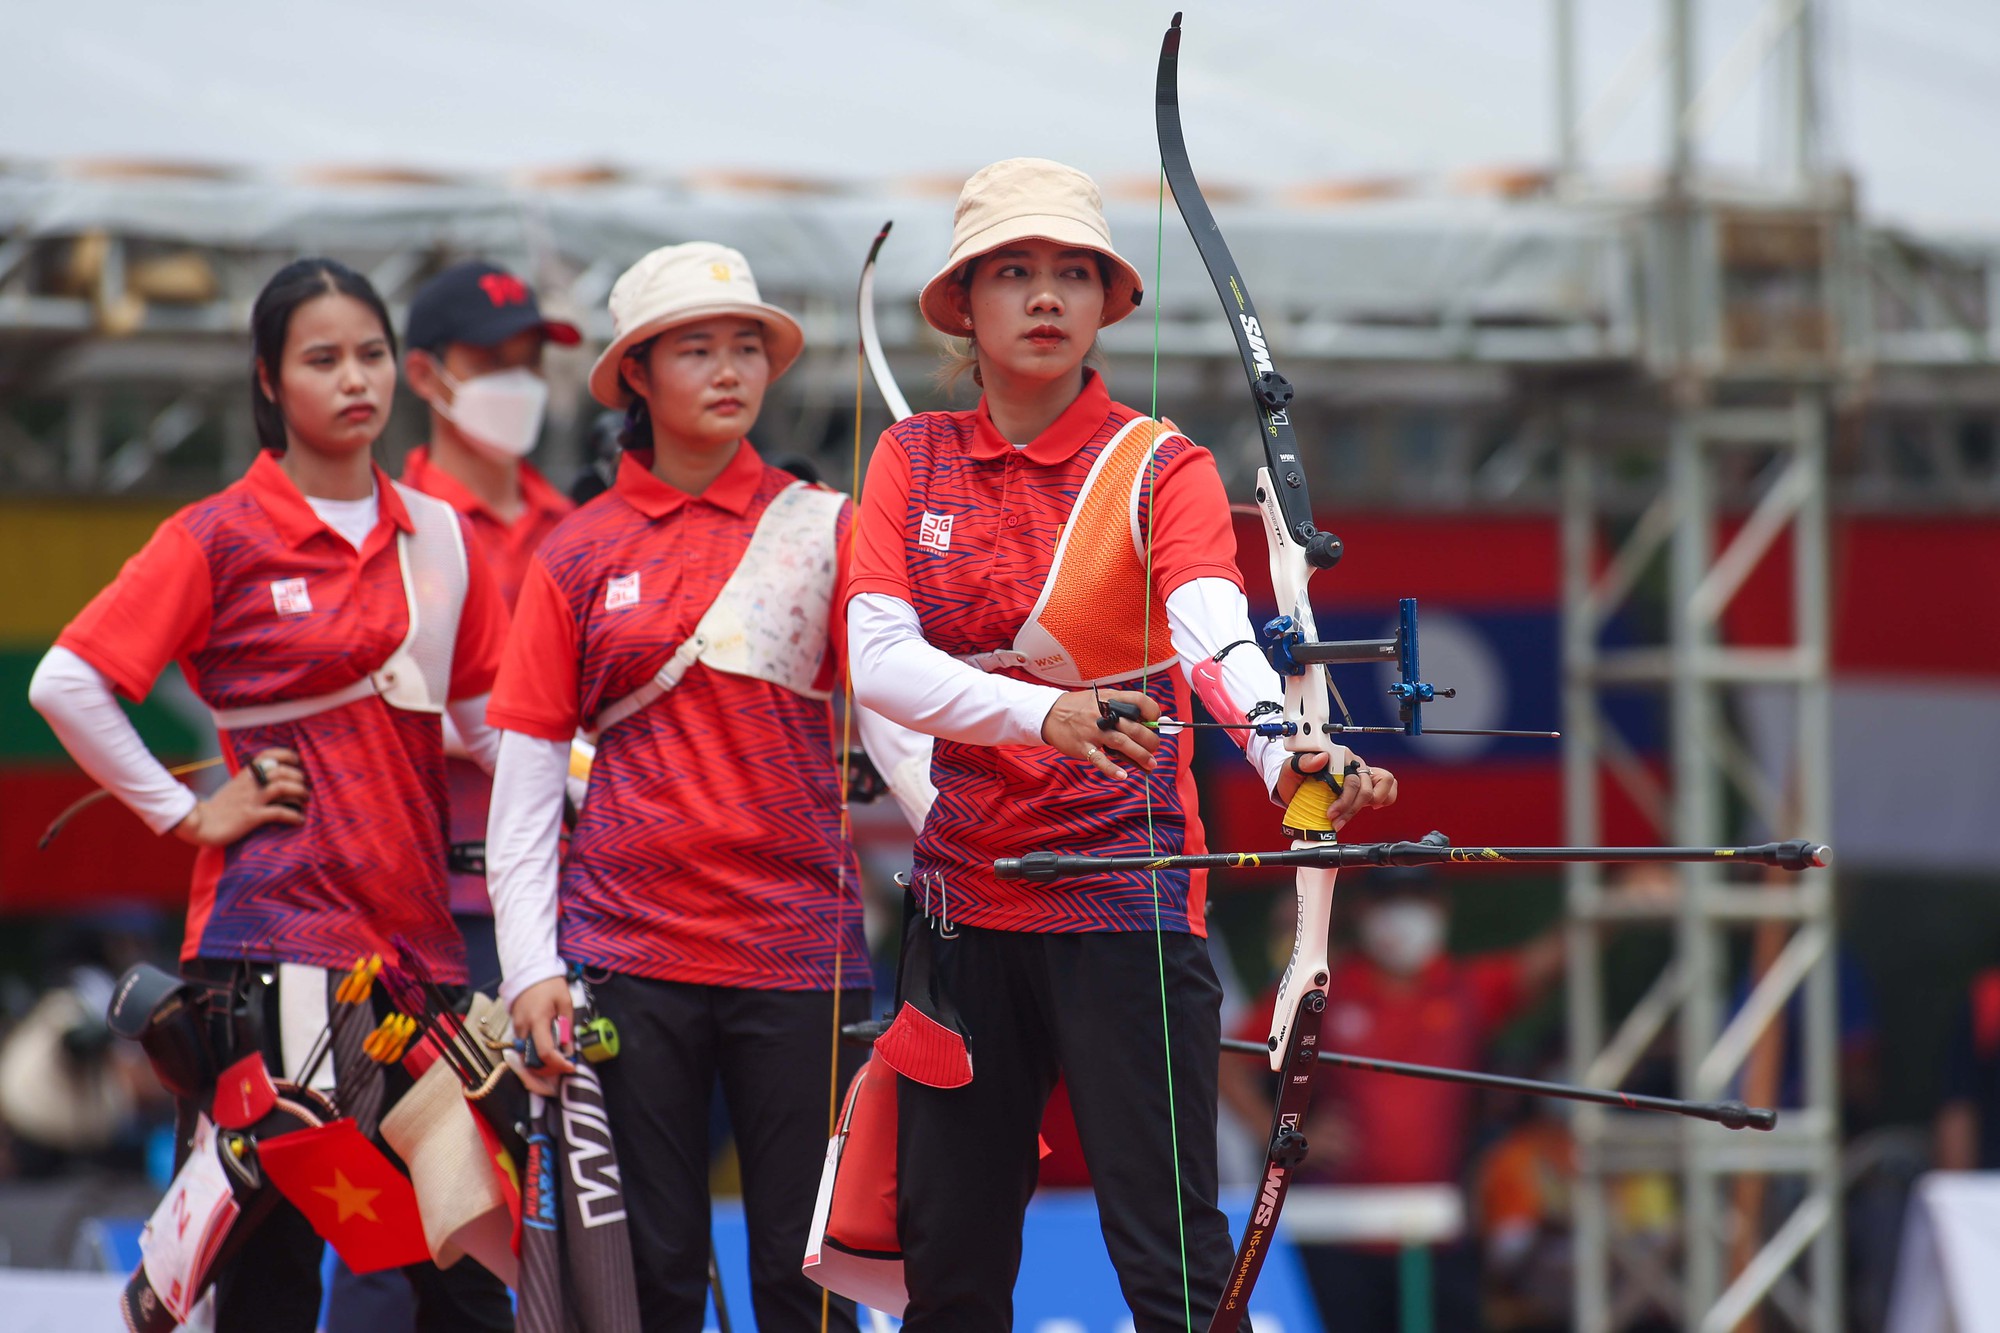 Người đẹp môn bắn cung Ánh Nguyệt cùng đồng đội mất huy chương vàng trước tuyển Philippines - Ảnh 2.